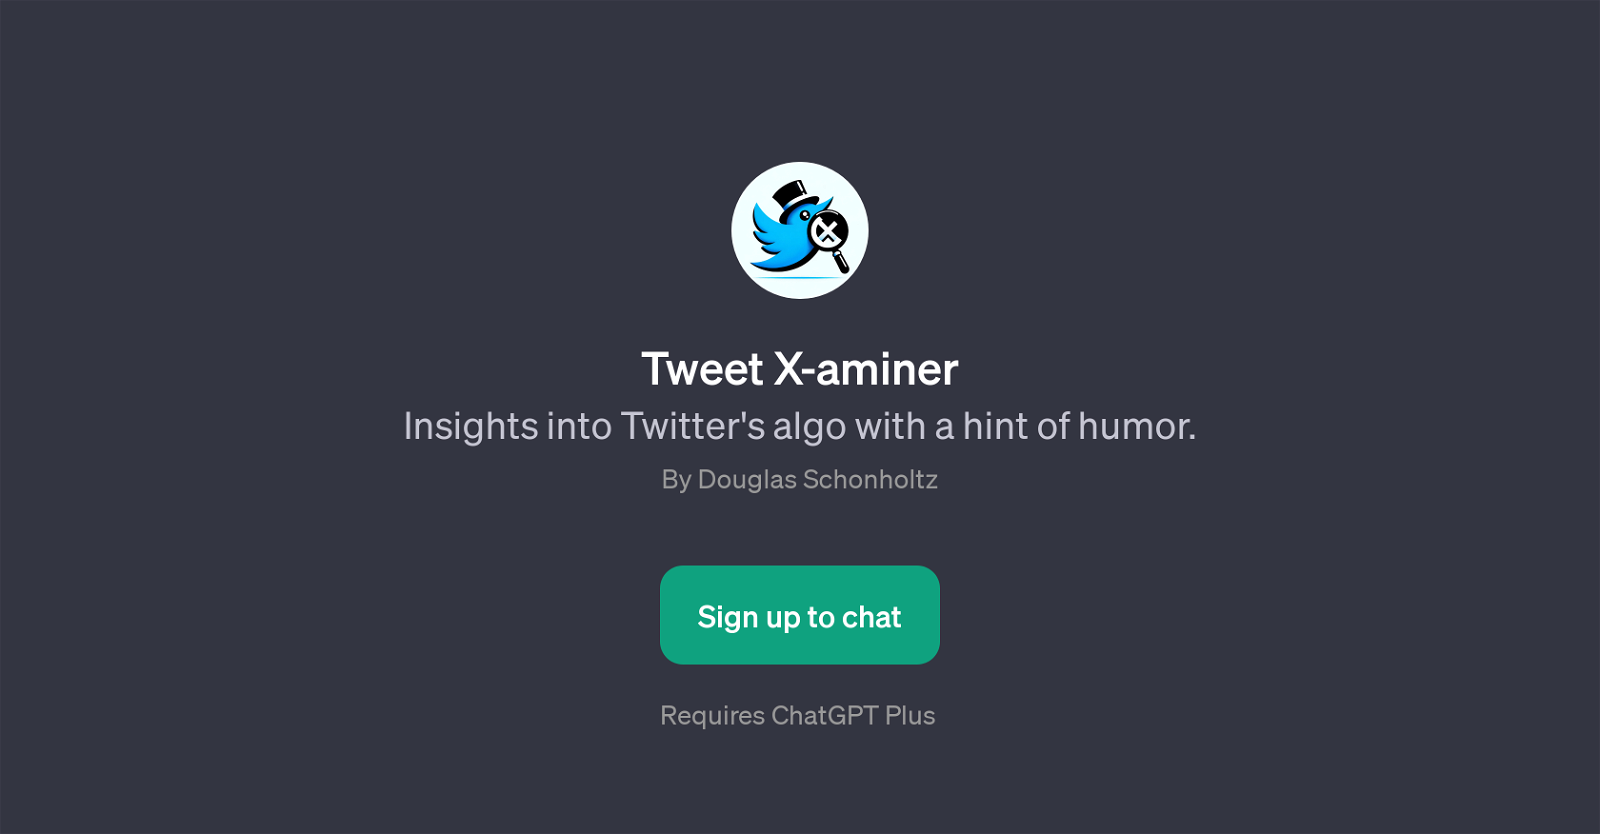 Tweet X-aminer website